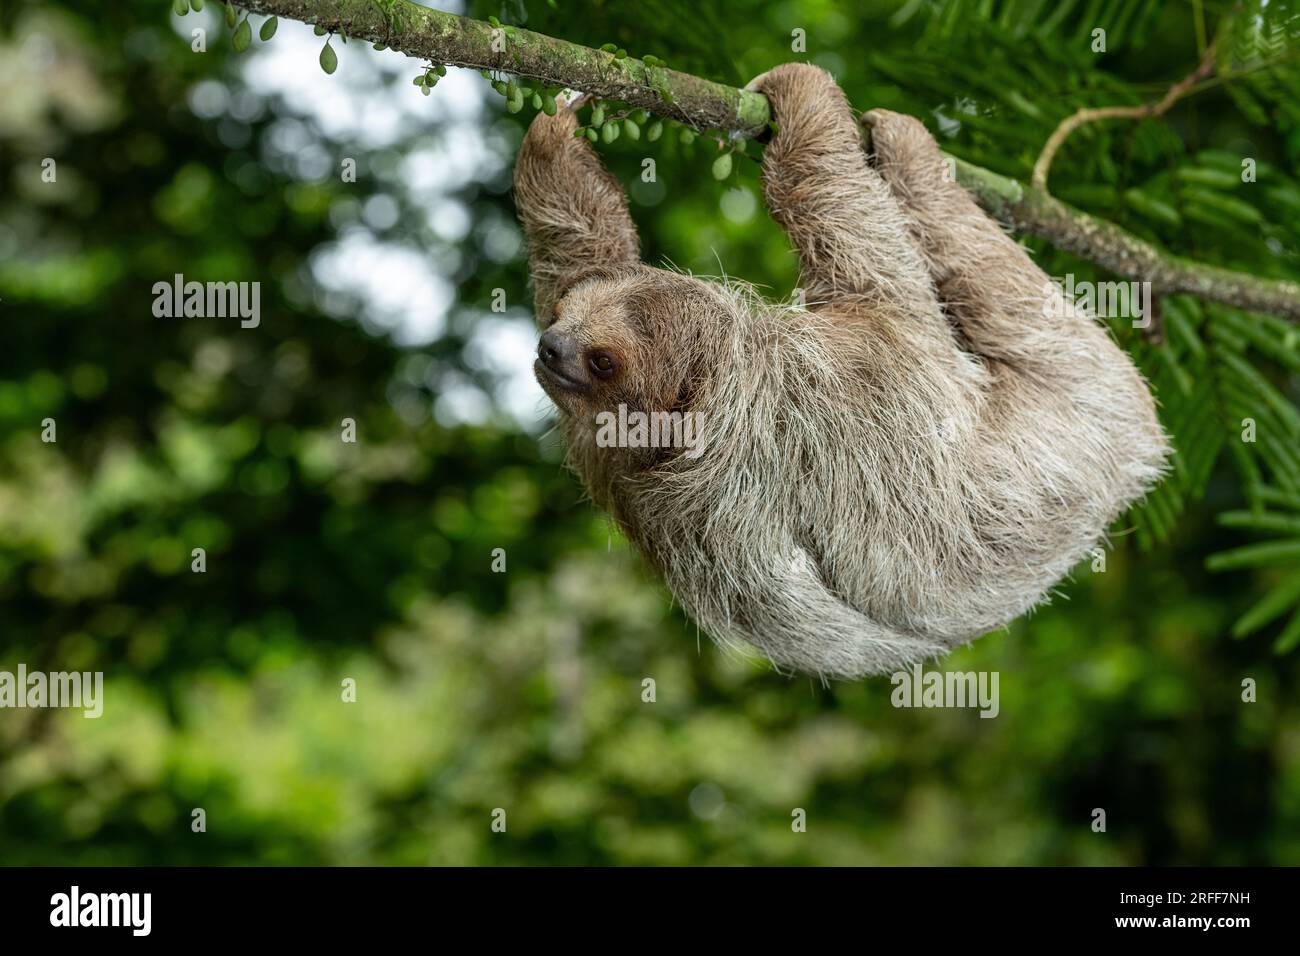 Bradypus variegatus (Bradypus varegatus) auf dem Baum, Costa Rica - Stockfoto Stockfoto